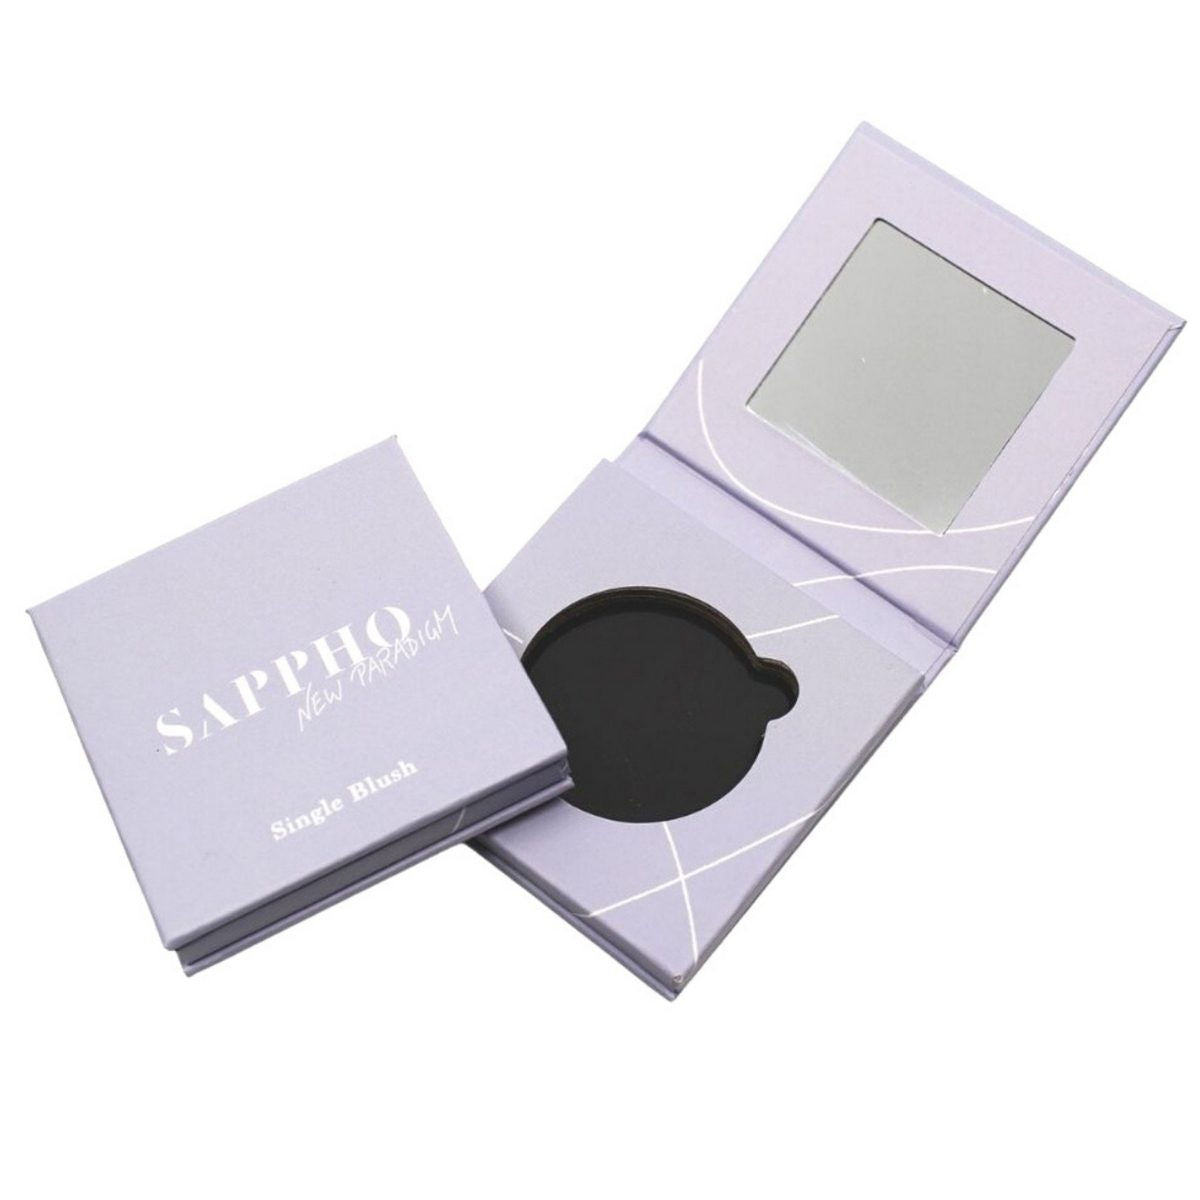 Sappho New Paradigm Natural Cheeks Single Compact